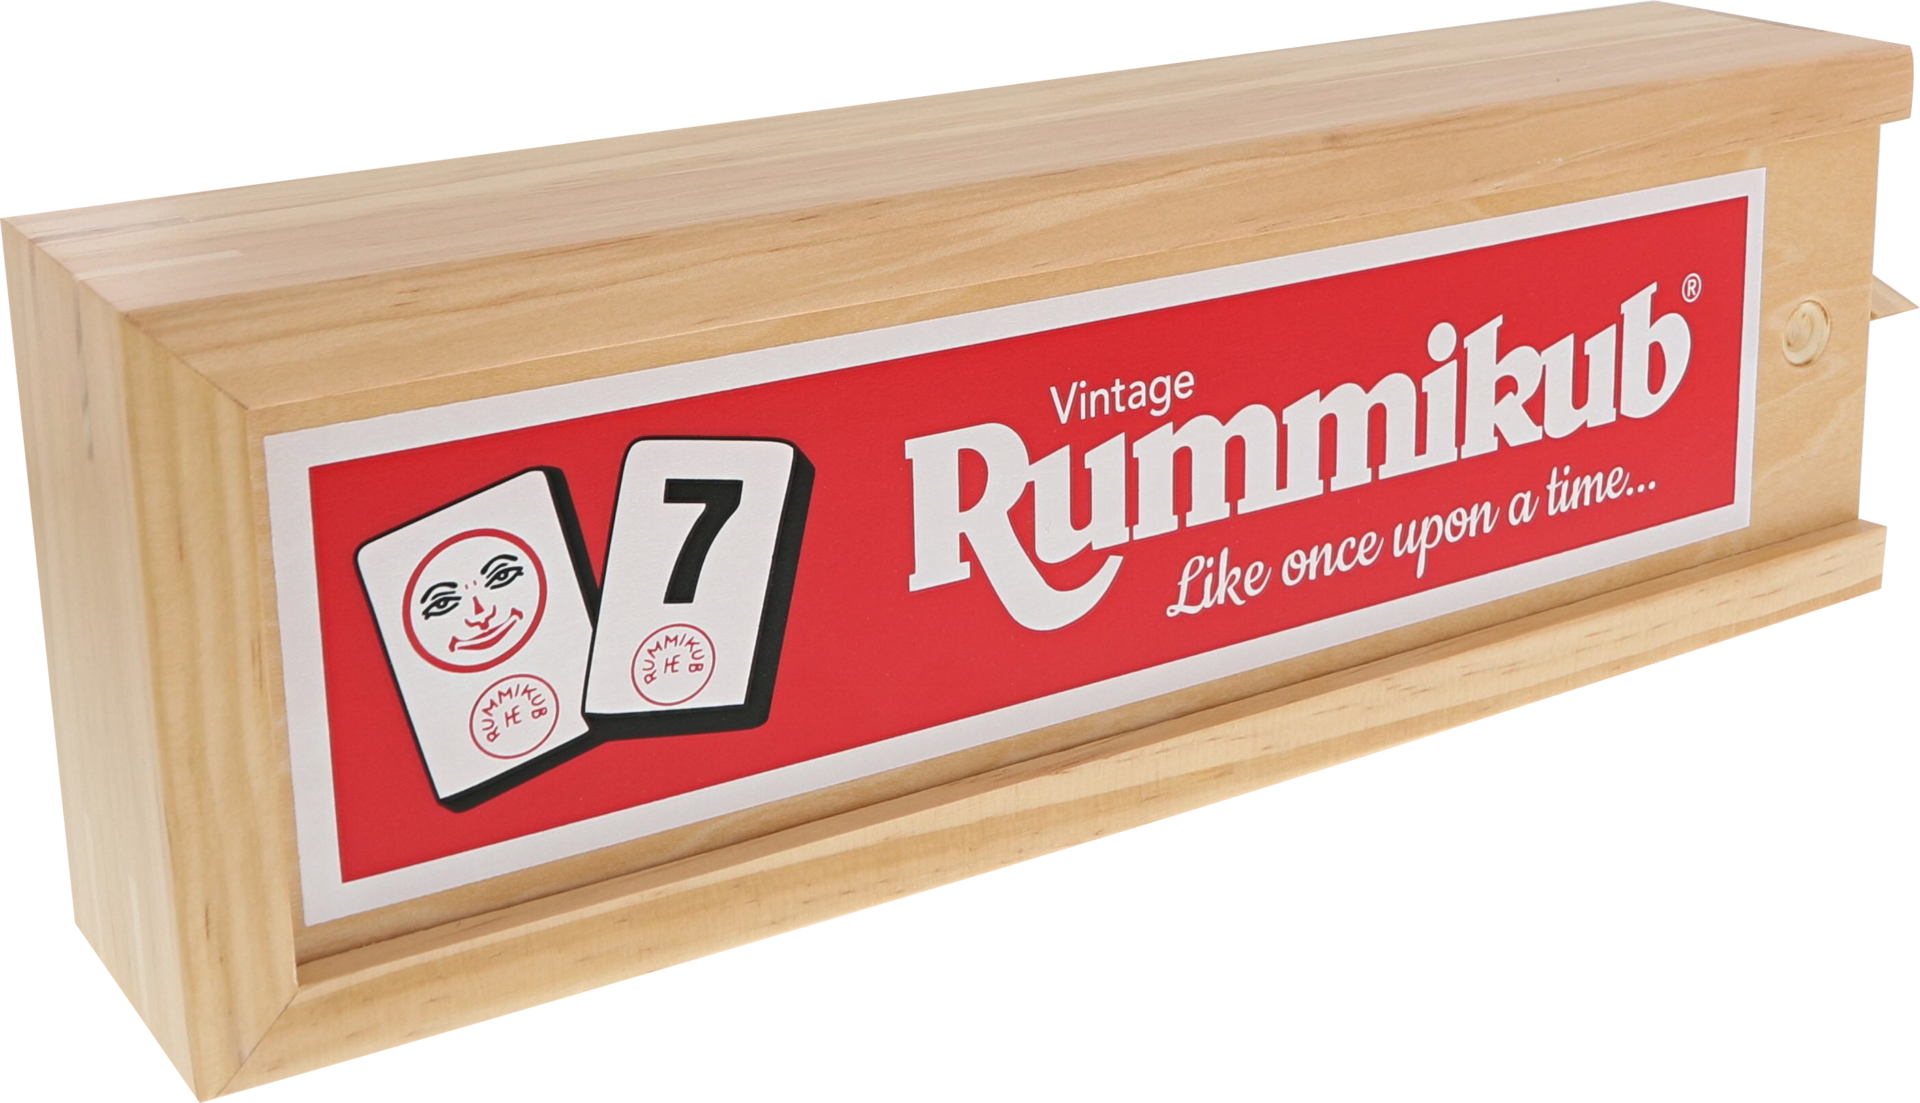 De doos van het strategische spel Rummikub Vintage vanuit een linkerhoek